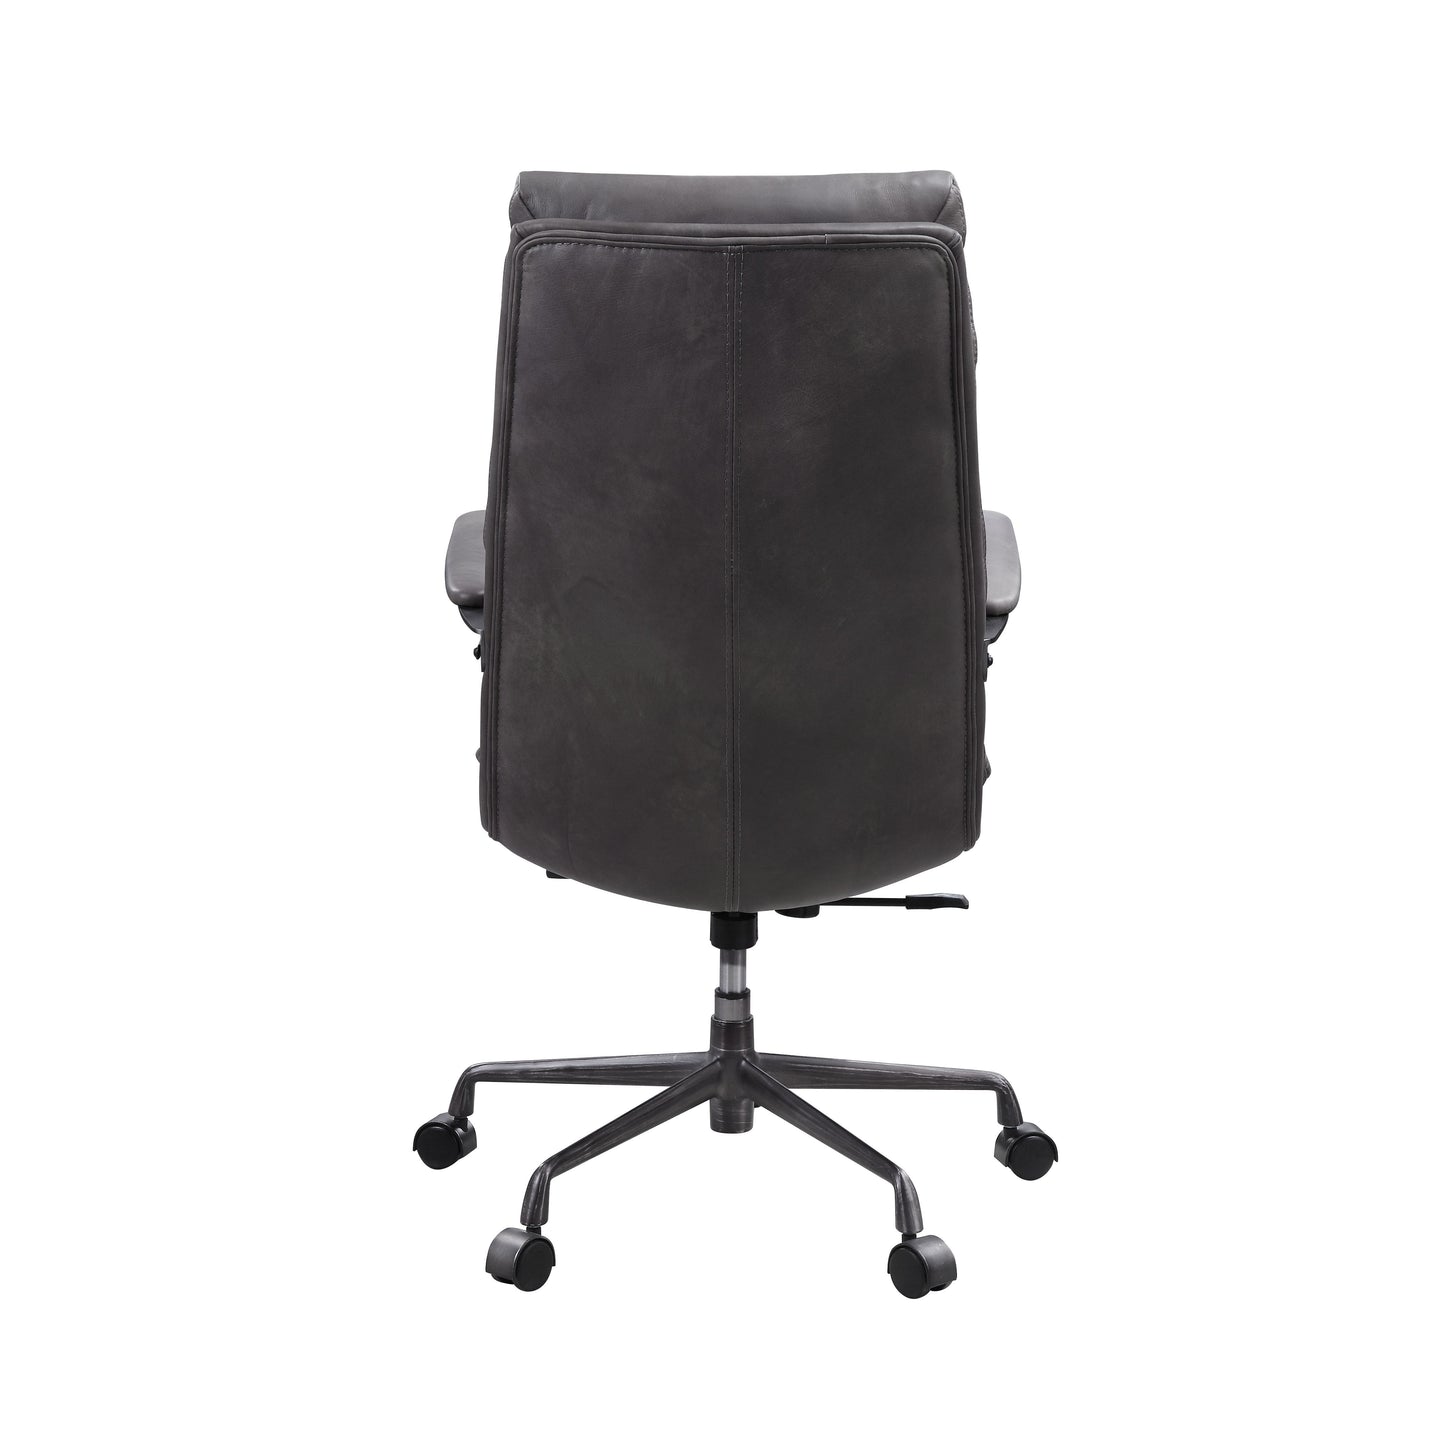 Crursa - Office Chair